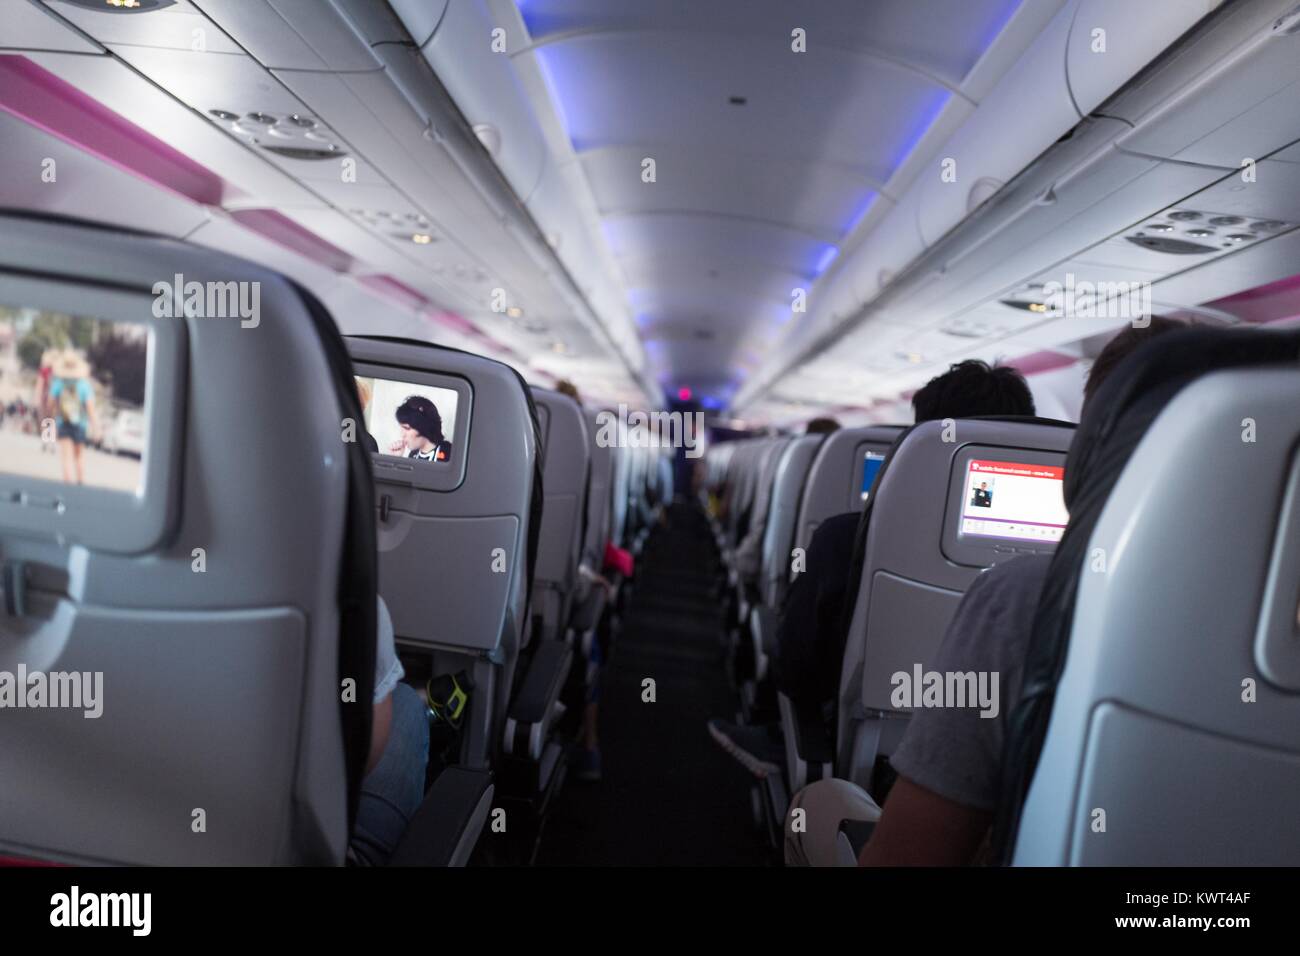 Vue vers le bas de l'allée de l'entraîneur section de classe Virgin America un aéronef en vol, avec les consoles de divertissement en vol sur les dossiers de siège visible, le 13 septembre 2017. Banque D'Images